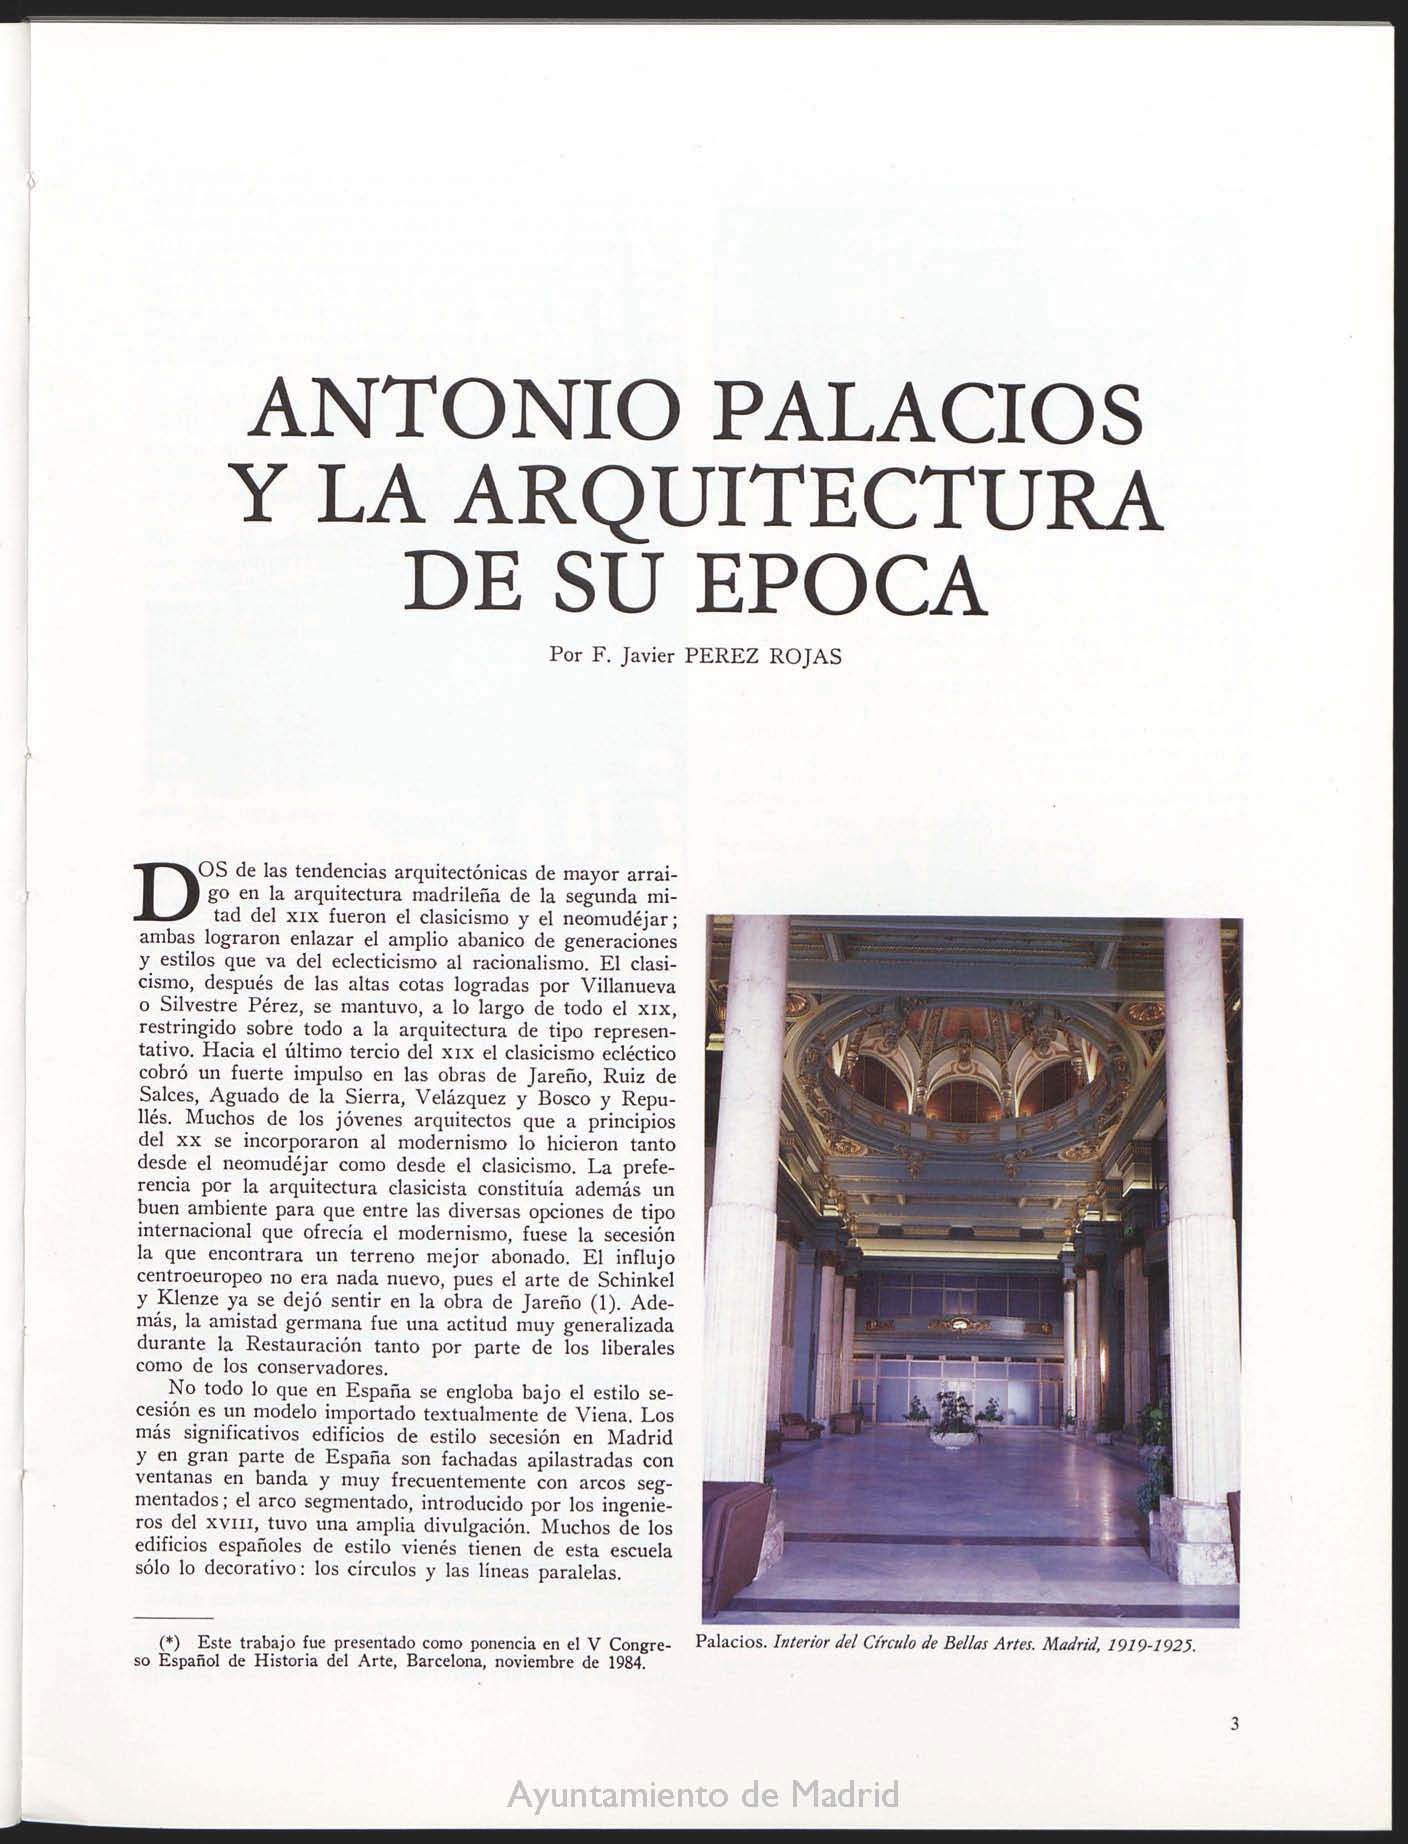 Antonio Palacios y la arquitectura de su tiempo

